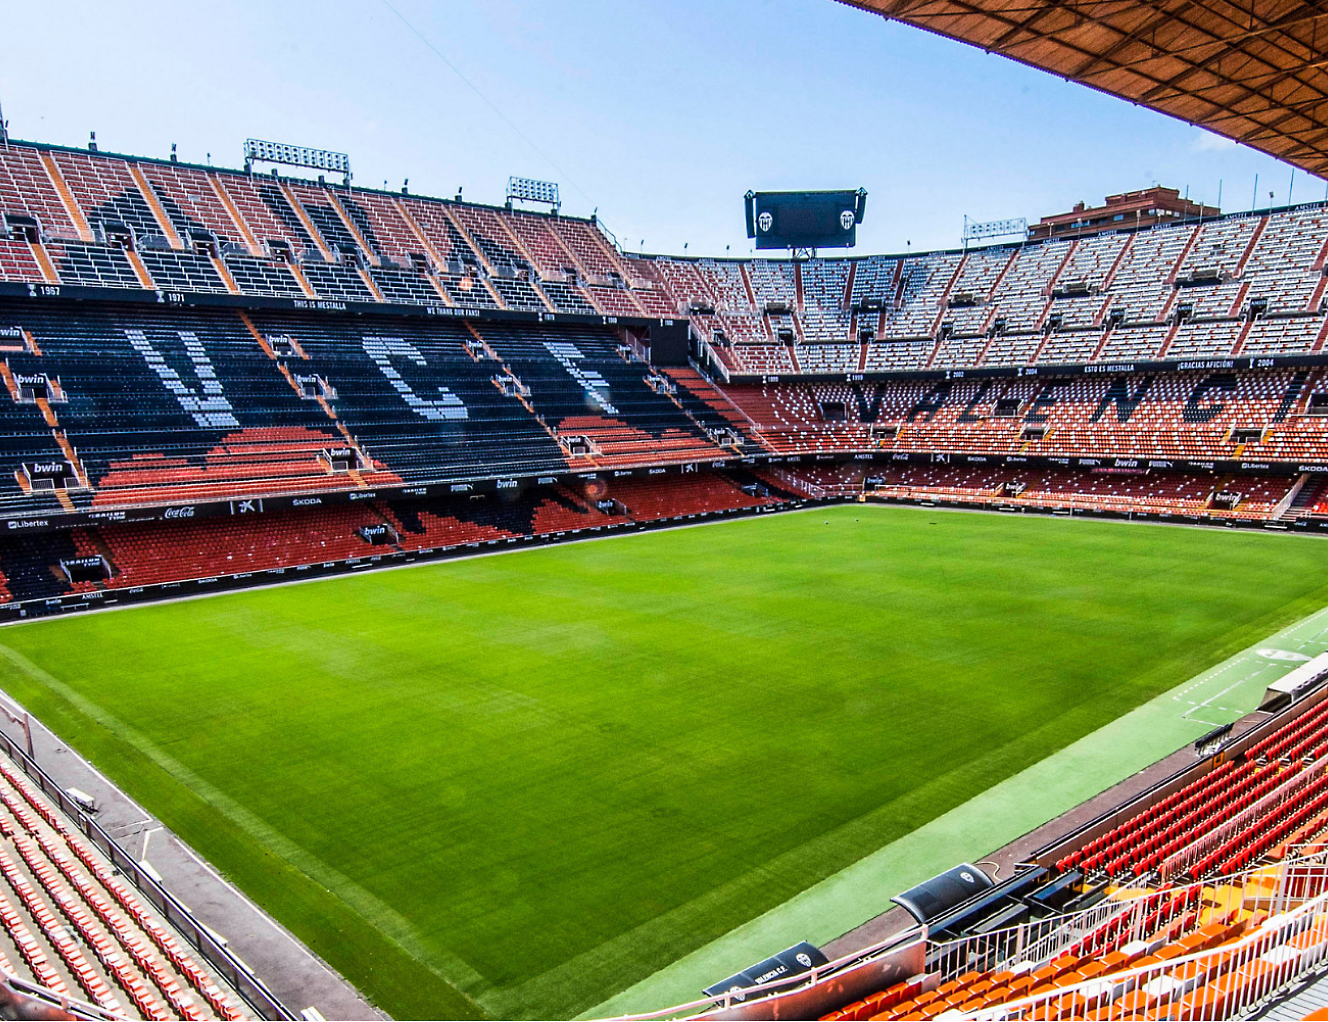 Vnitřek fotbalového stadionu s oranžovým hřištěm.